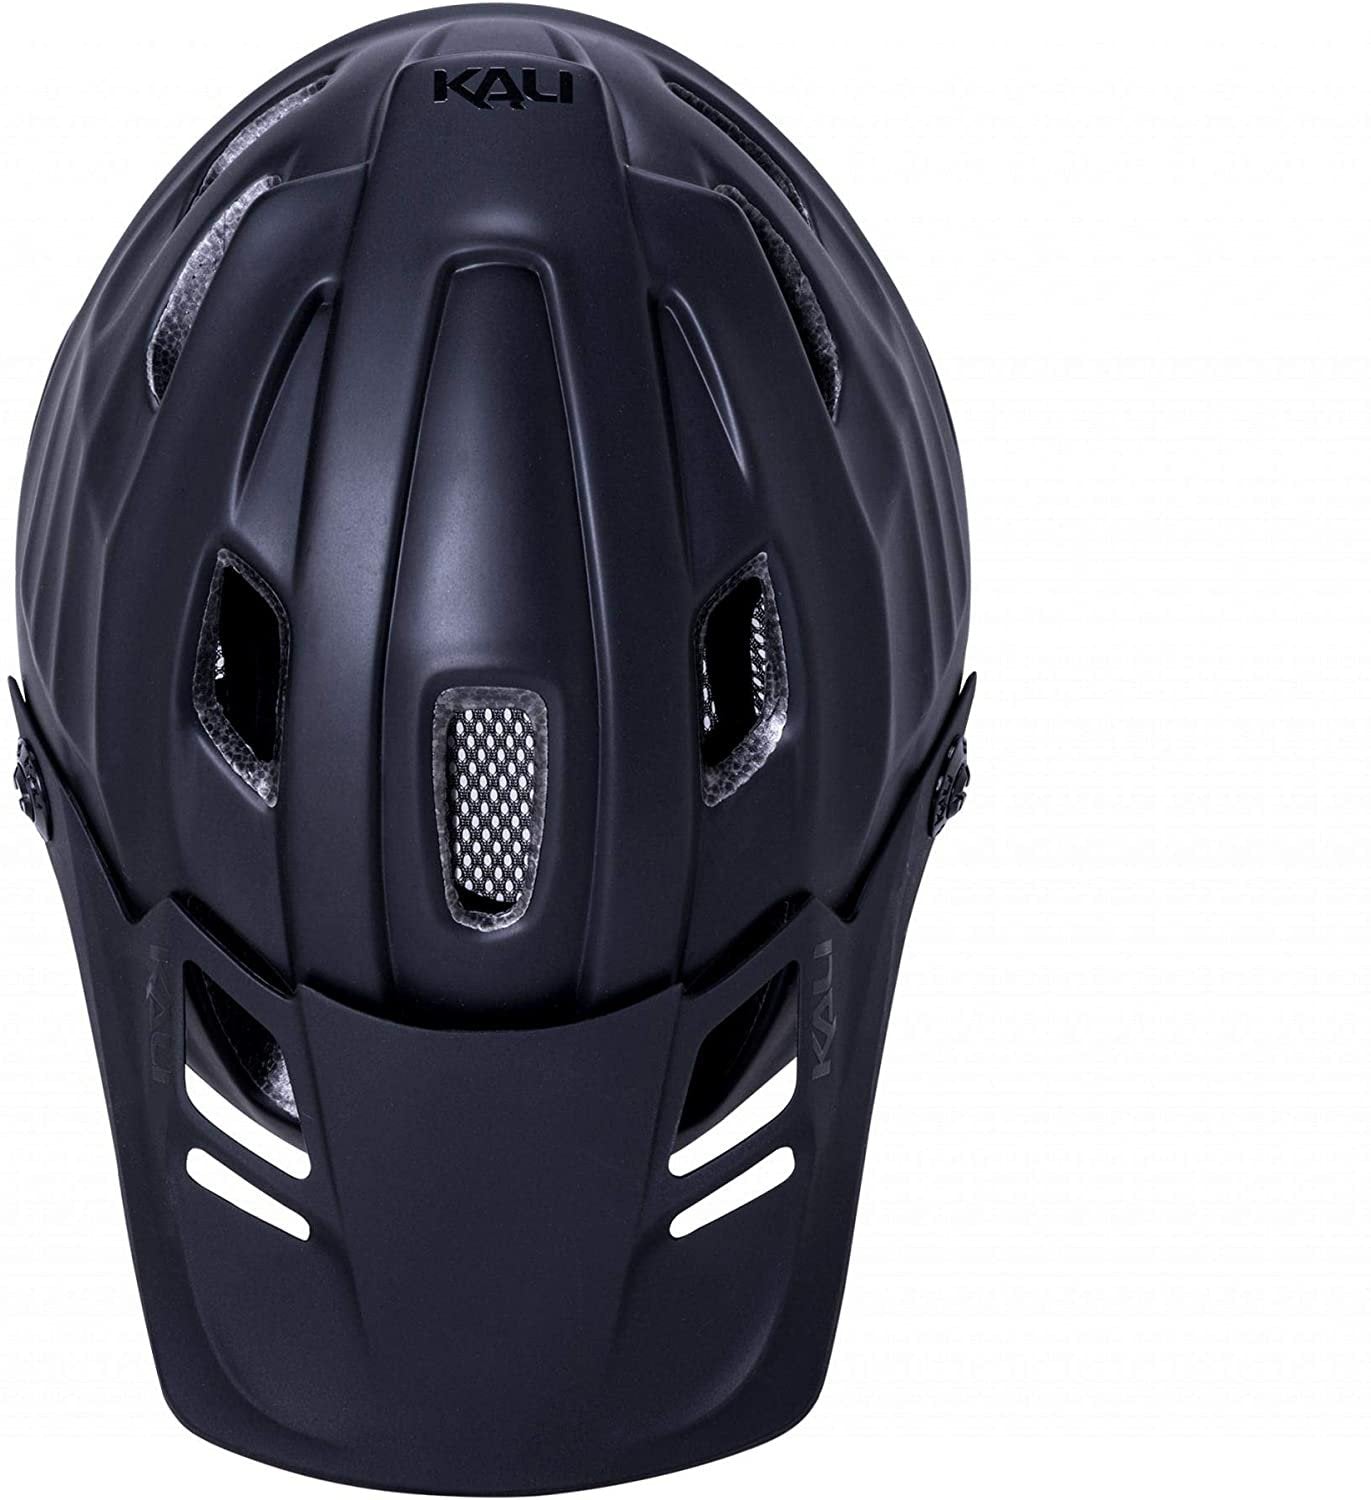 Maya 3.0 Bicycle Helmet - Black/Black